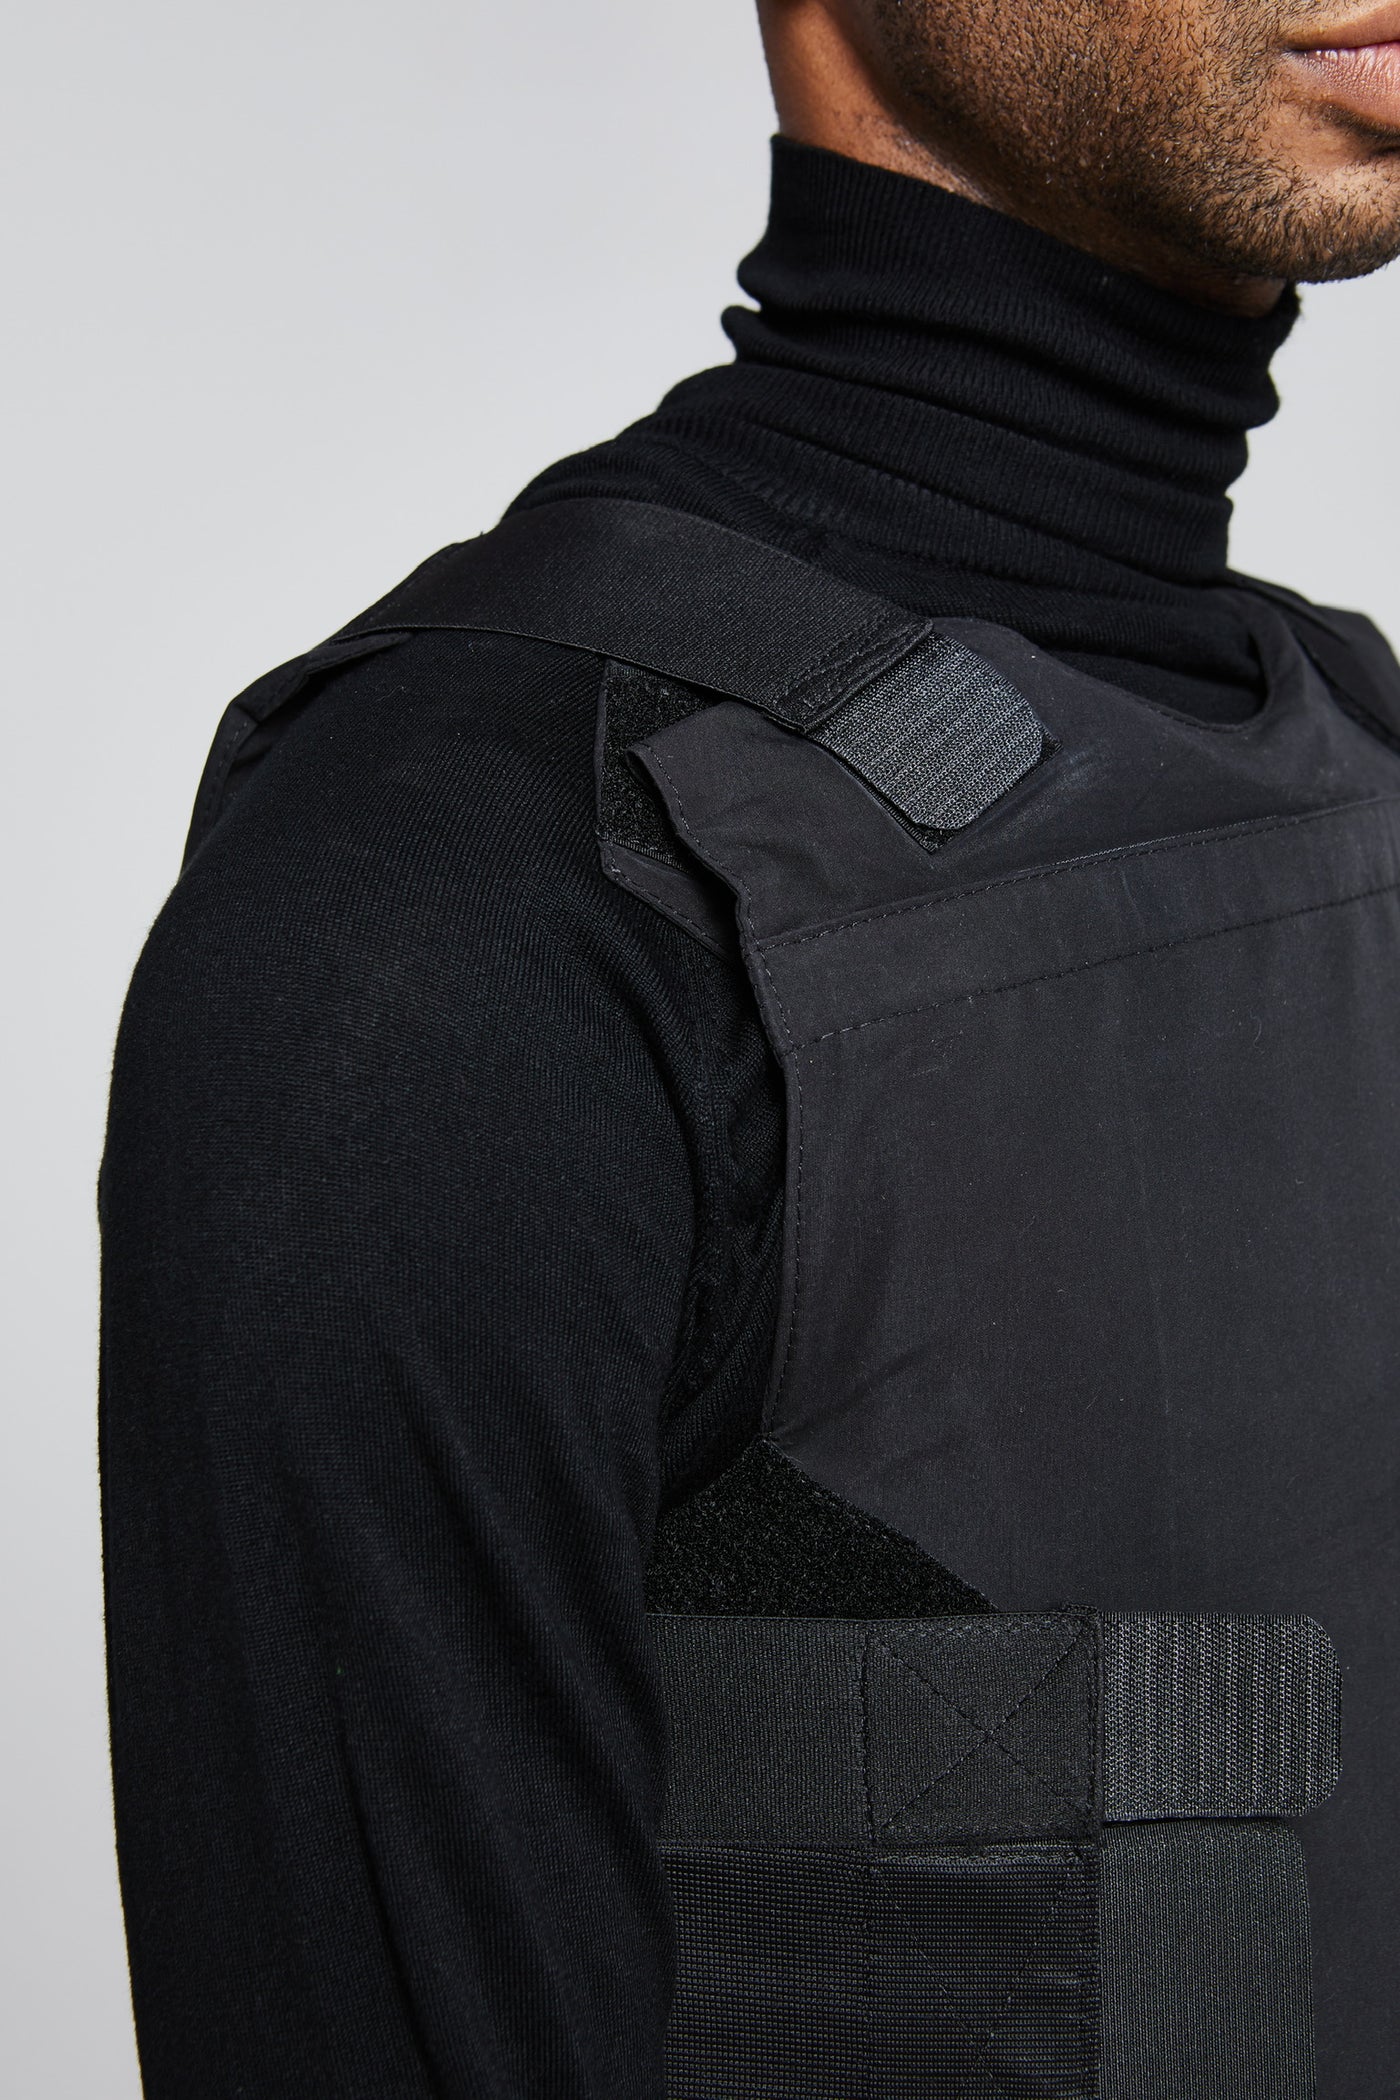 Bullet Resistant Concealable Men's Vest